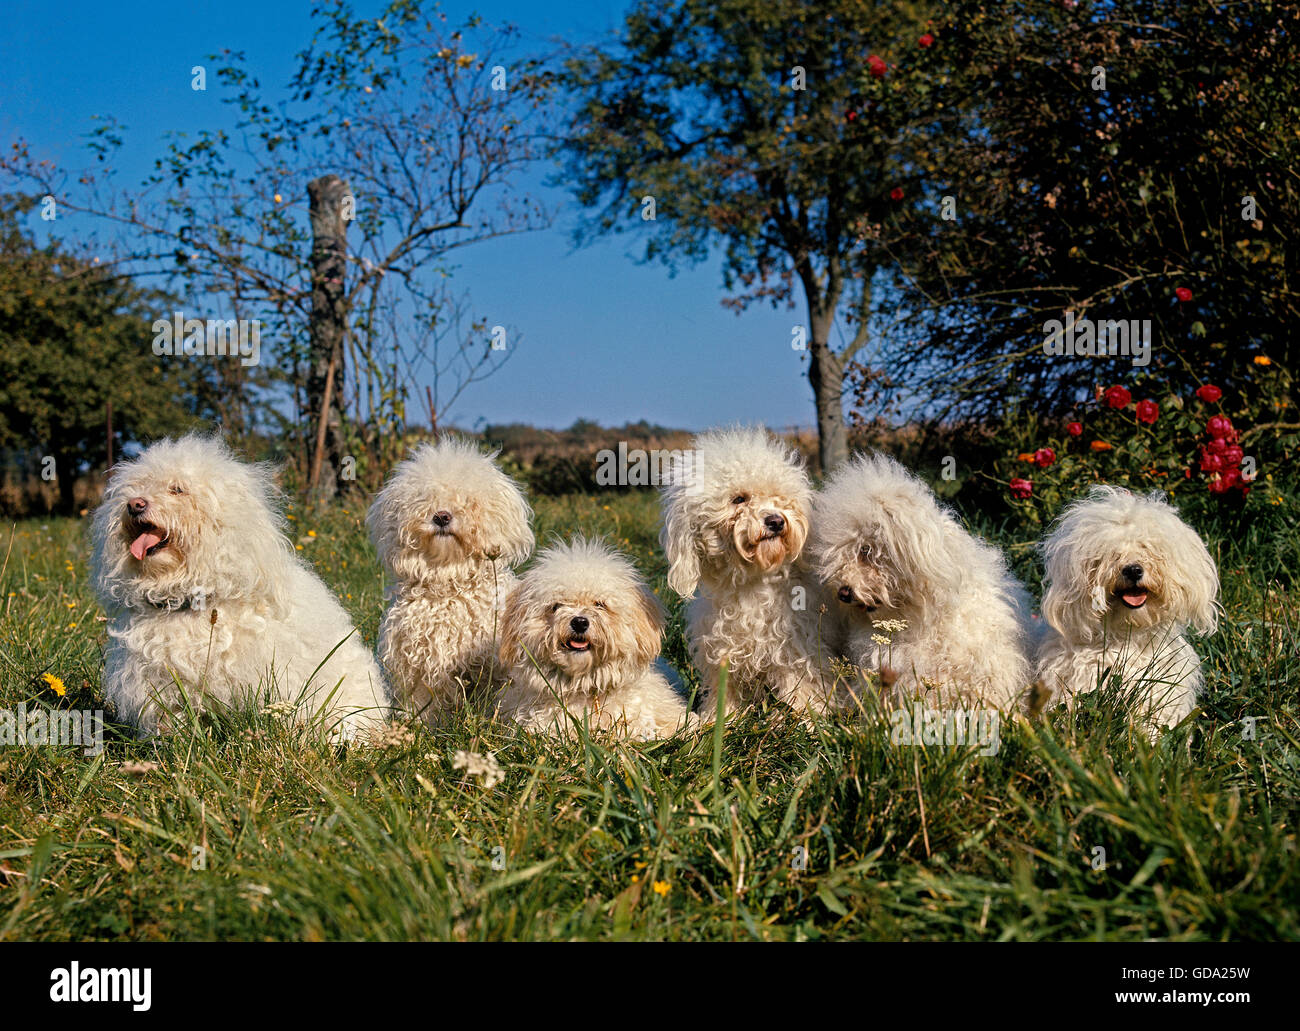 Bichon Frise Dog, Adults on Grass Stock Photo